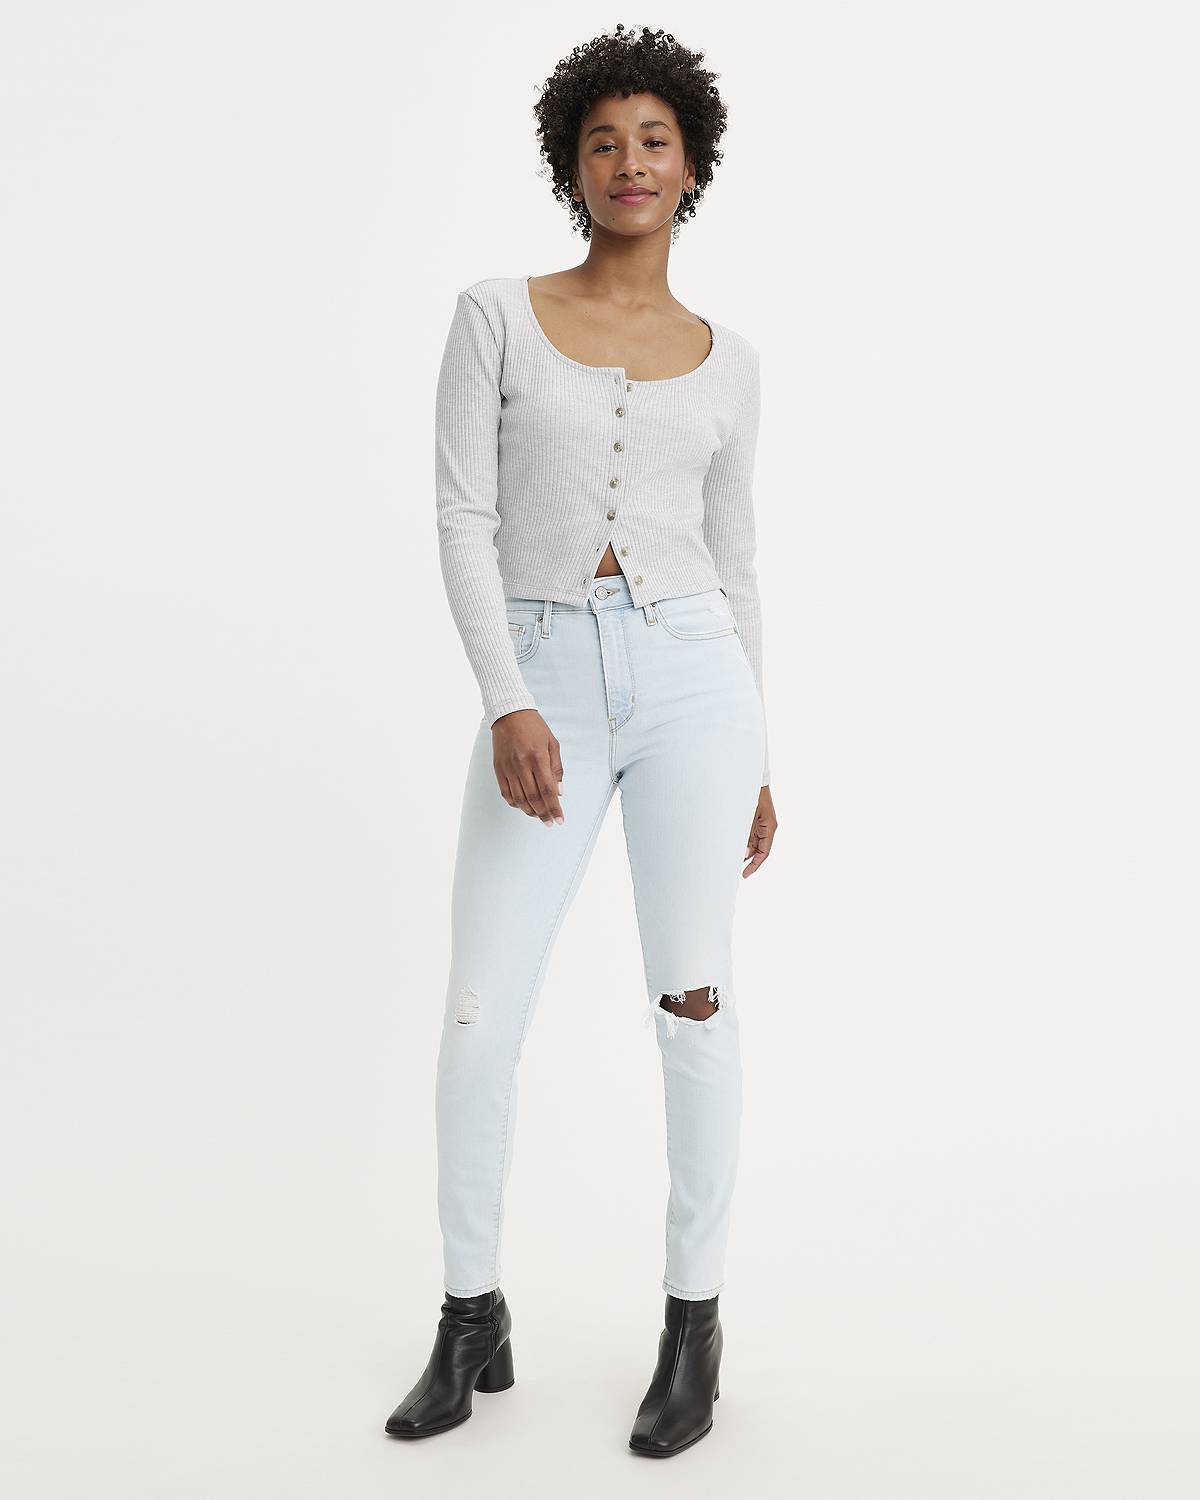 Model wearing jeans